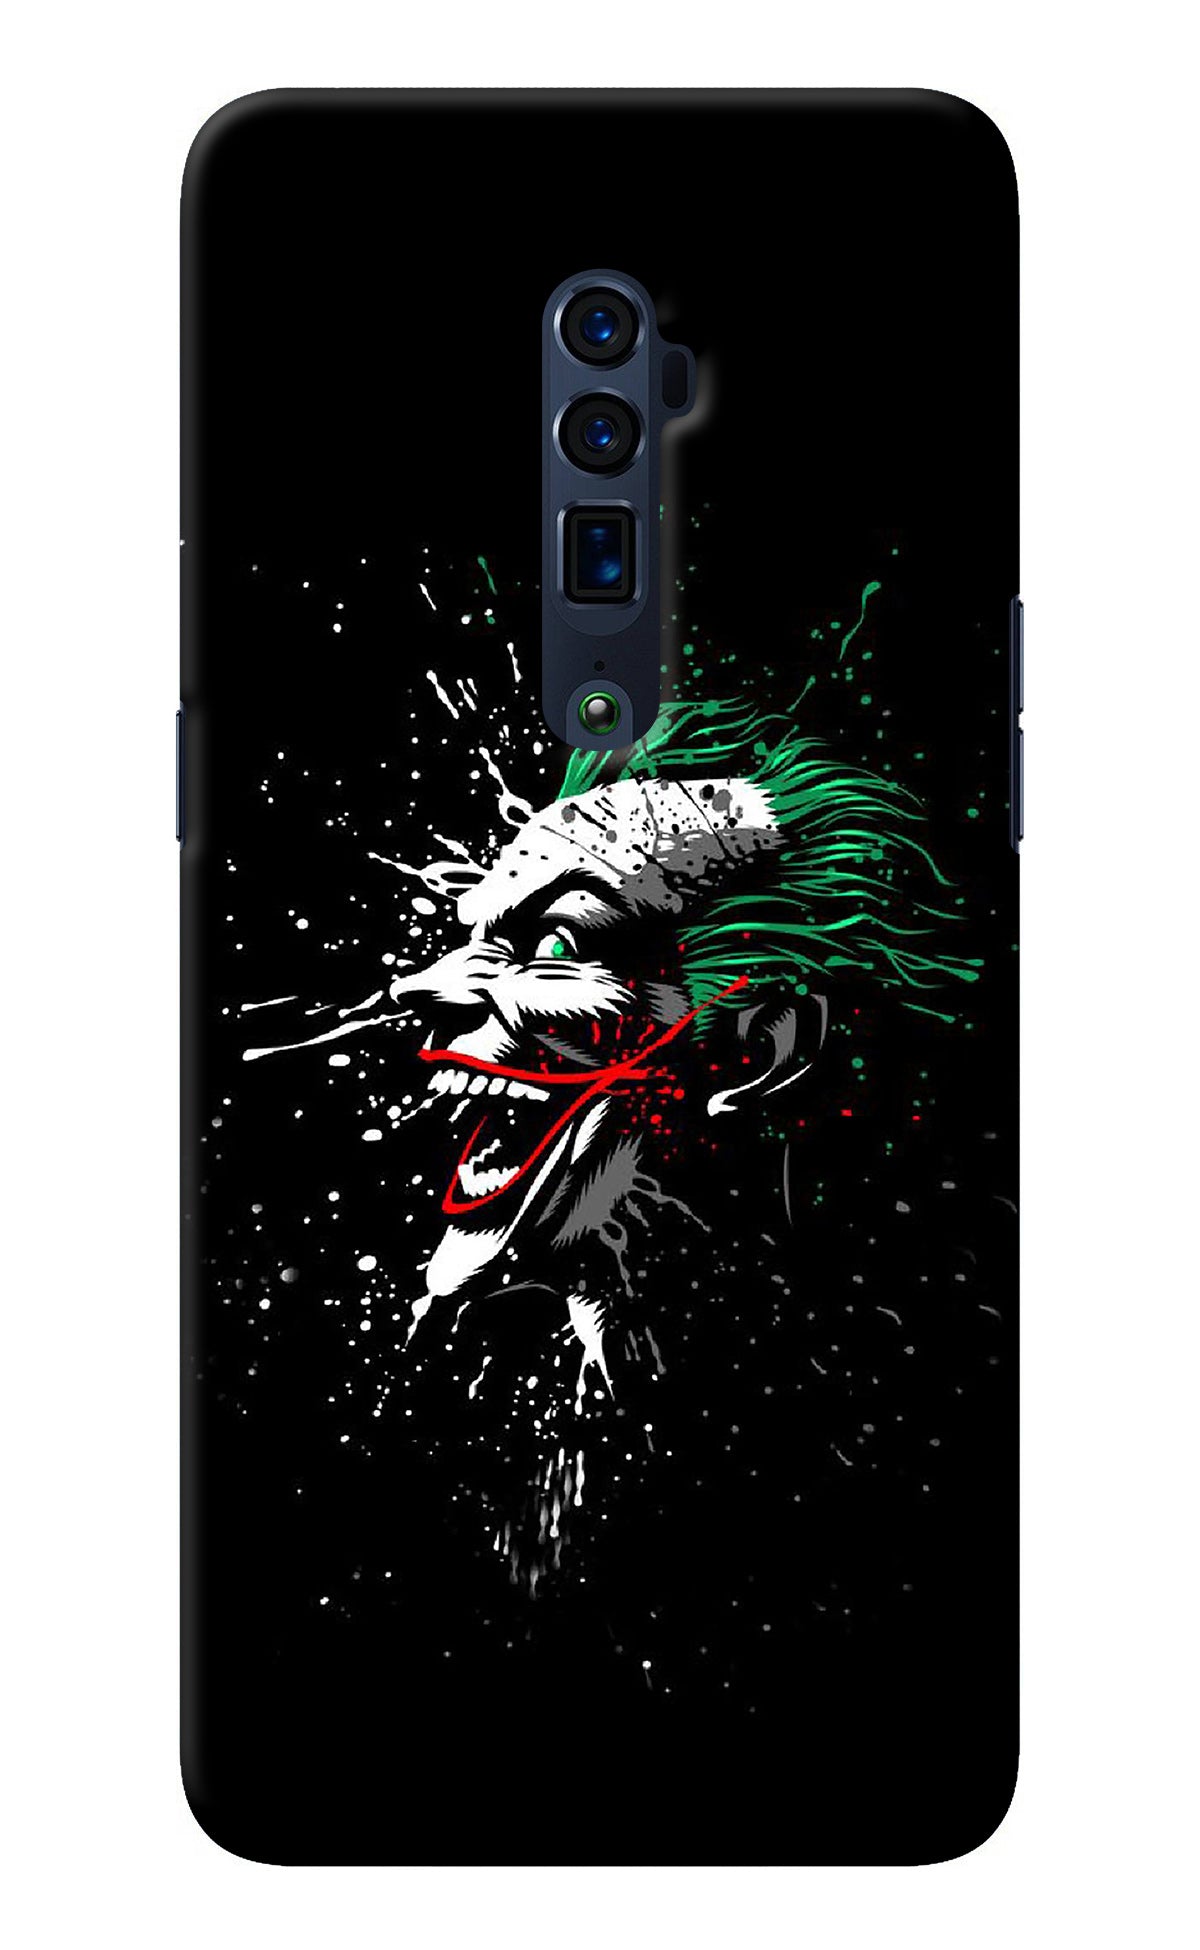 Joker Oppo Reno 10x Zoom Back Cover